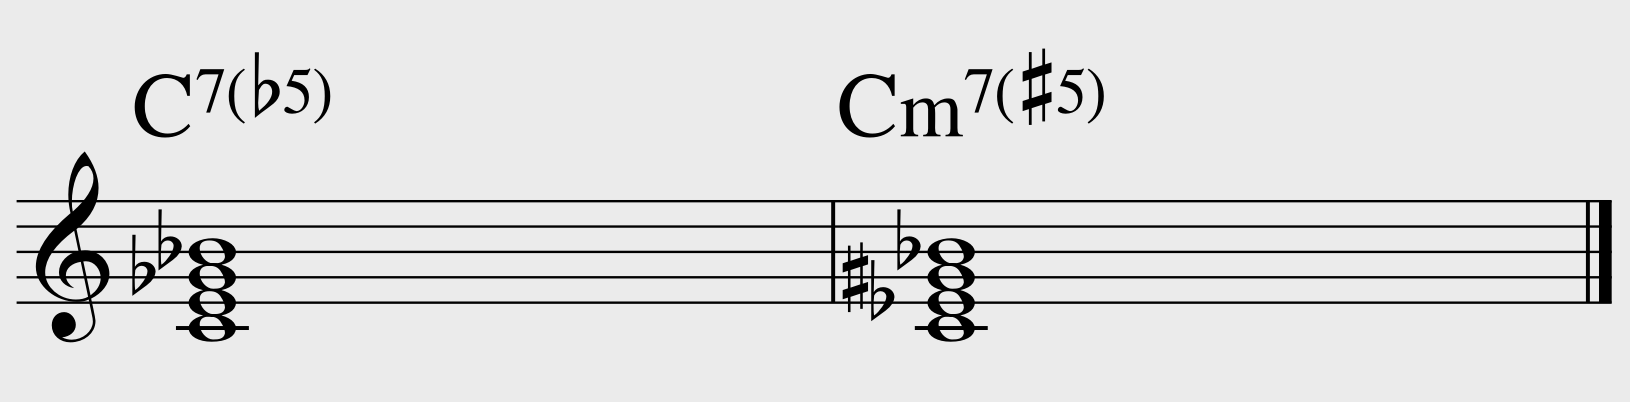 C7(b5), Cm7(#5)